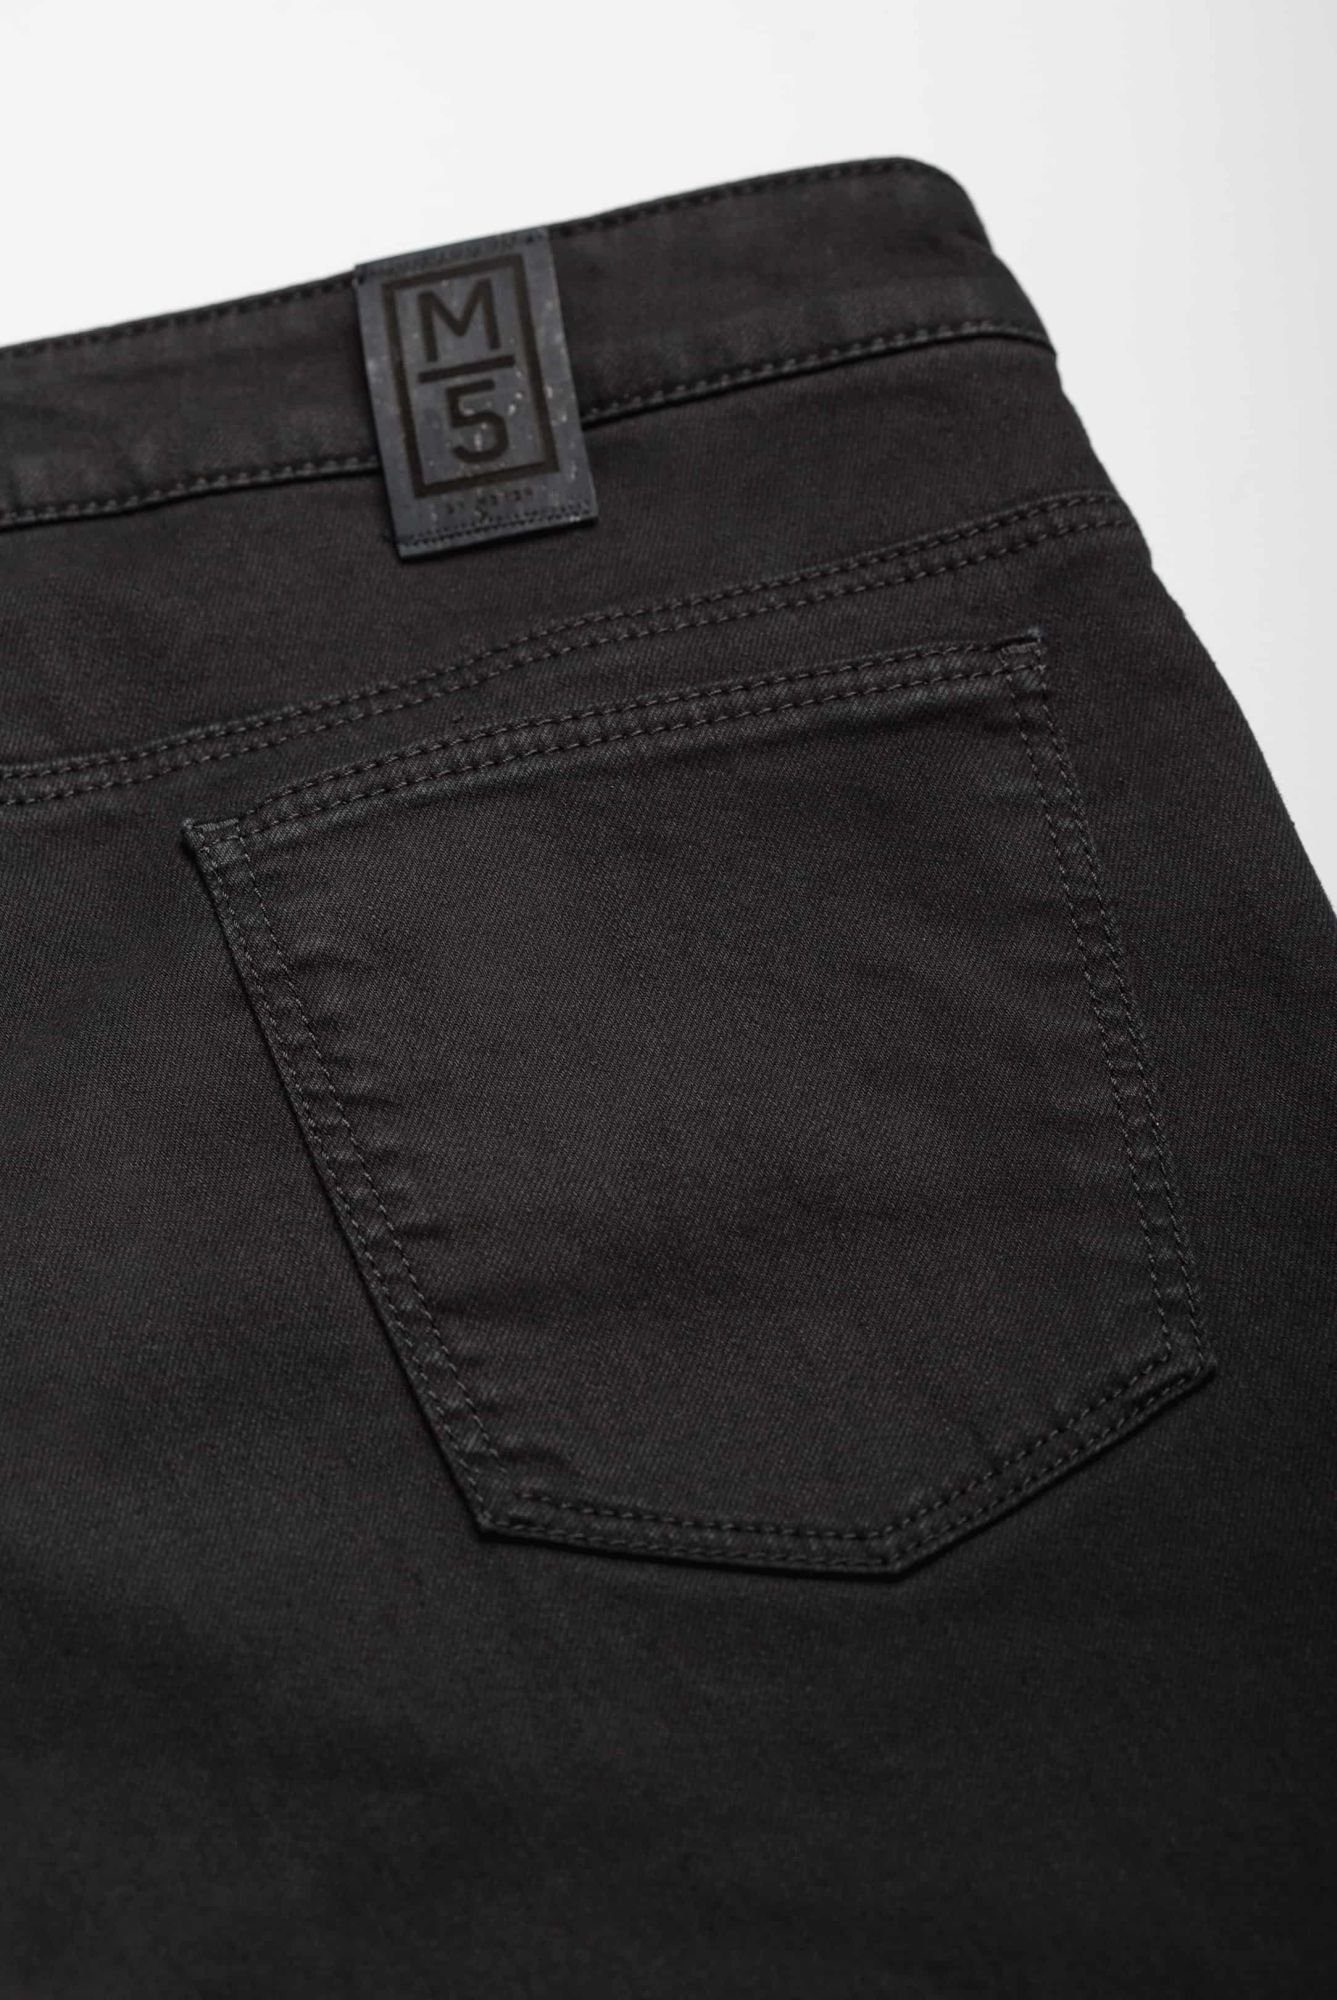 Regular Fit Jeans im MEYER M5 Pocket 6209 schwarz Style Five Regular-fit-Jeans